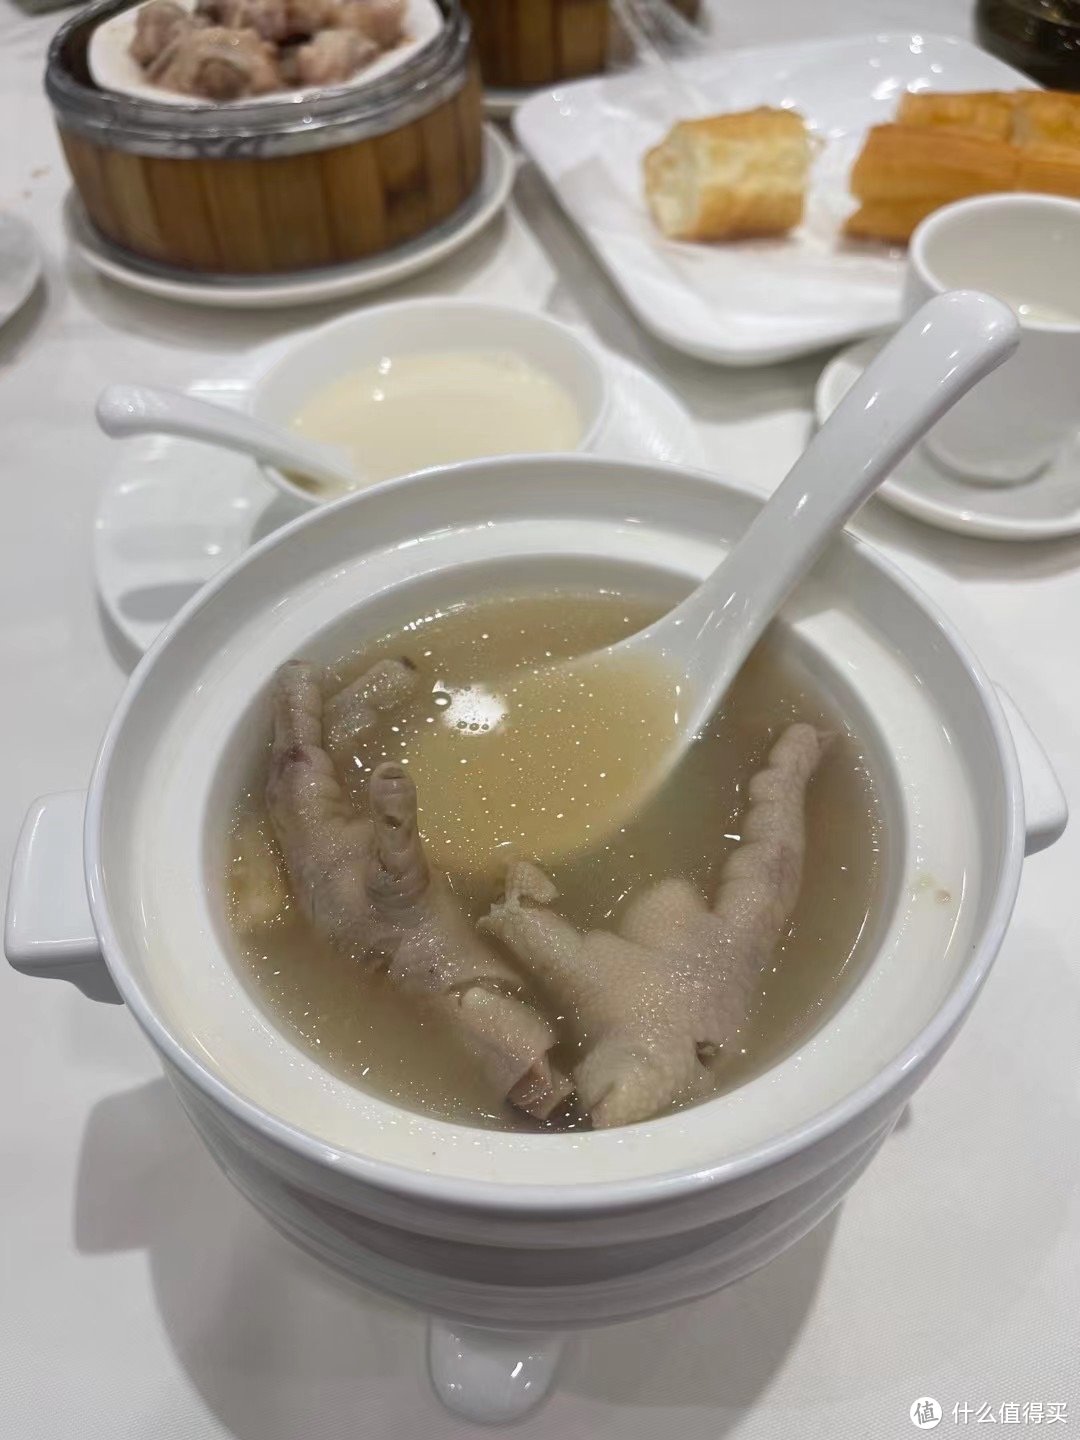 炖鸡爪汤是一道美味的汤品